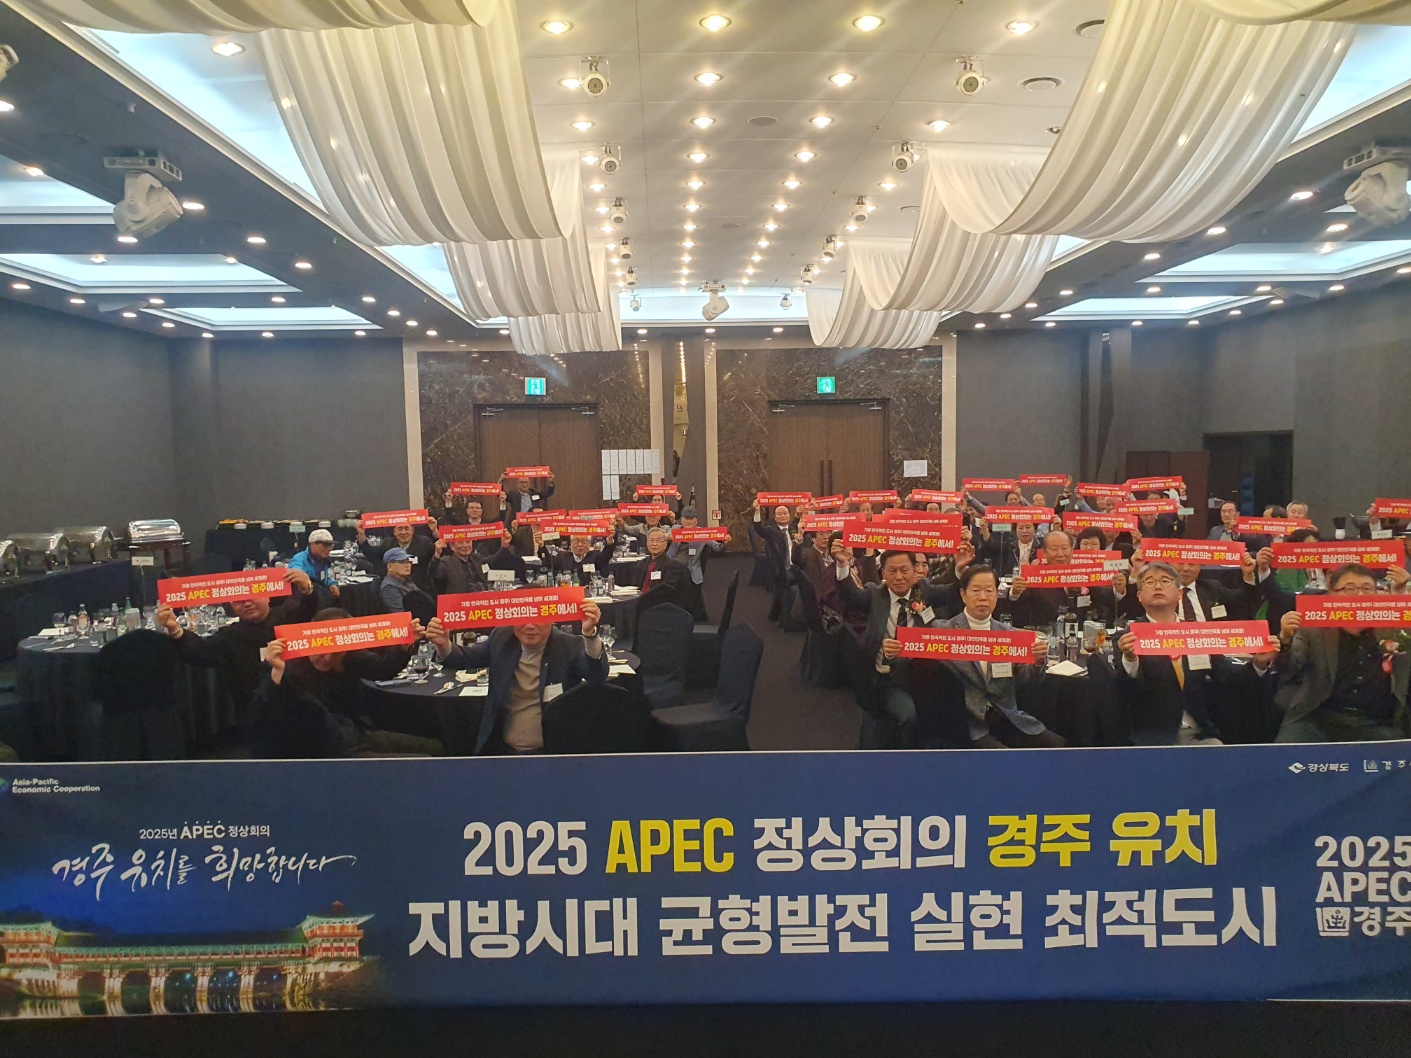 재경안강향우회 회원들이 지난 19일 서울 삼정호텔에서 정기총회 후 APEC 정상회의 경주유치 퍼포먼스를 펼치고 있다.